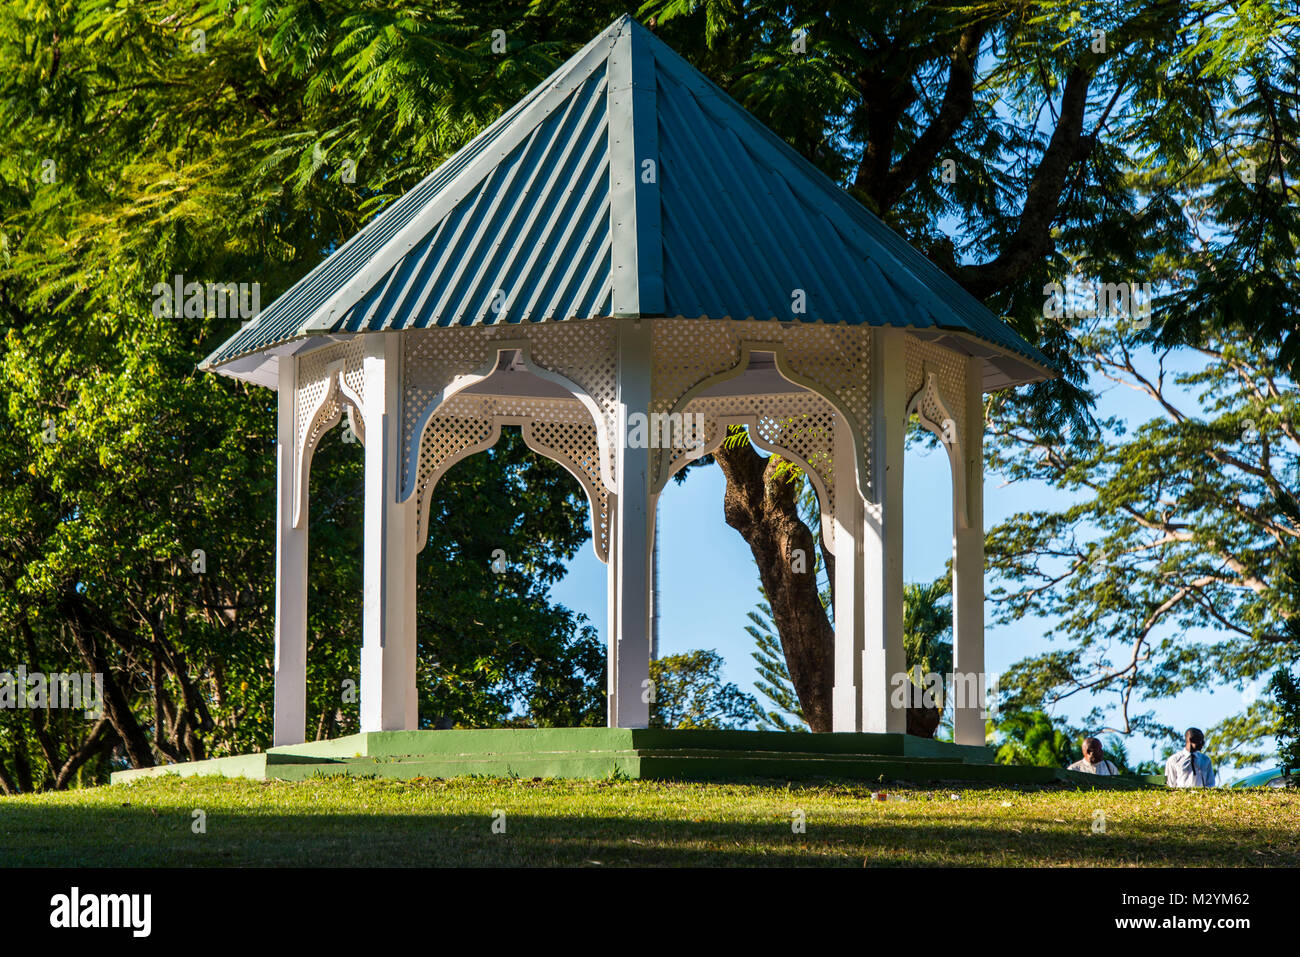 Pavillion dans le jardin botanique de roseau dans la capitale de la Dominique, des Caraïbes Banque D'Images